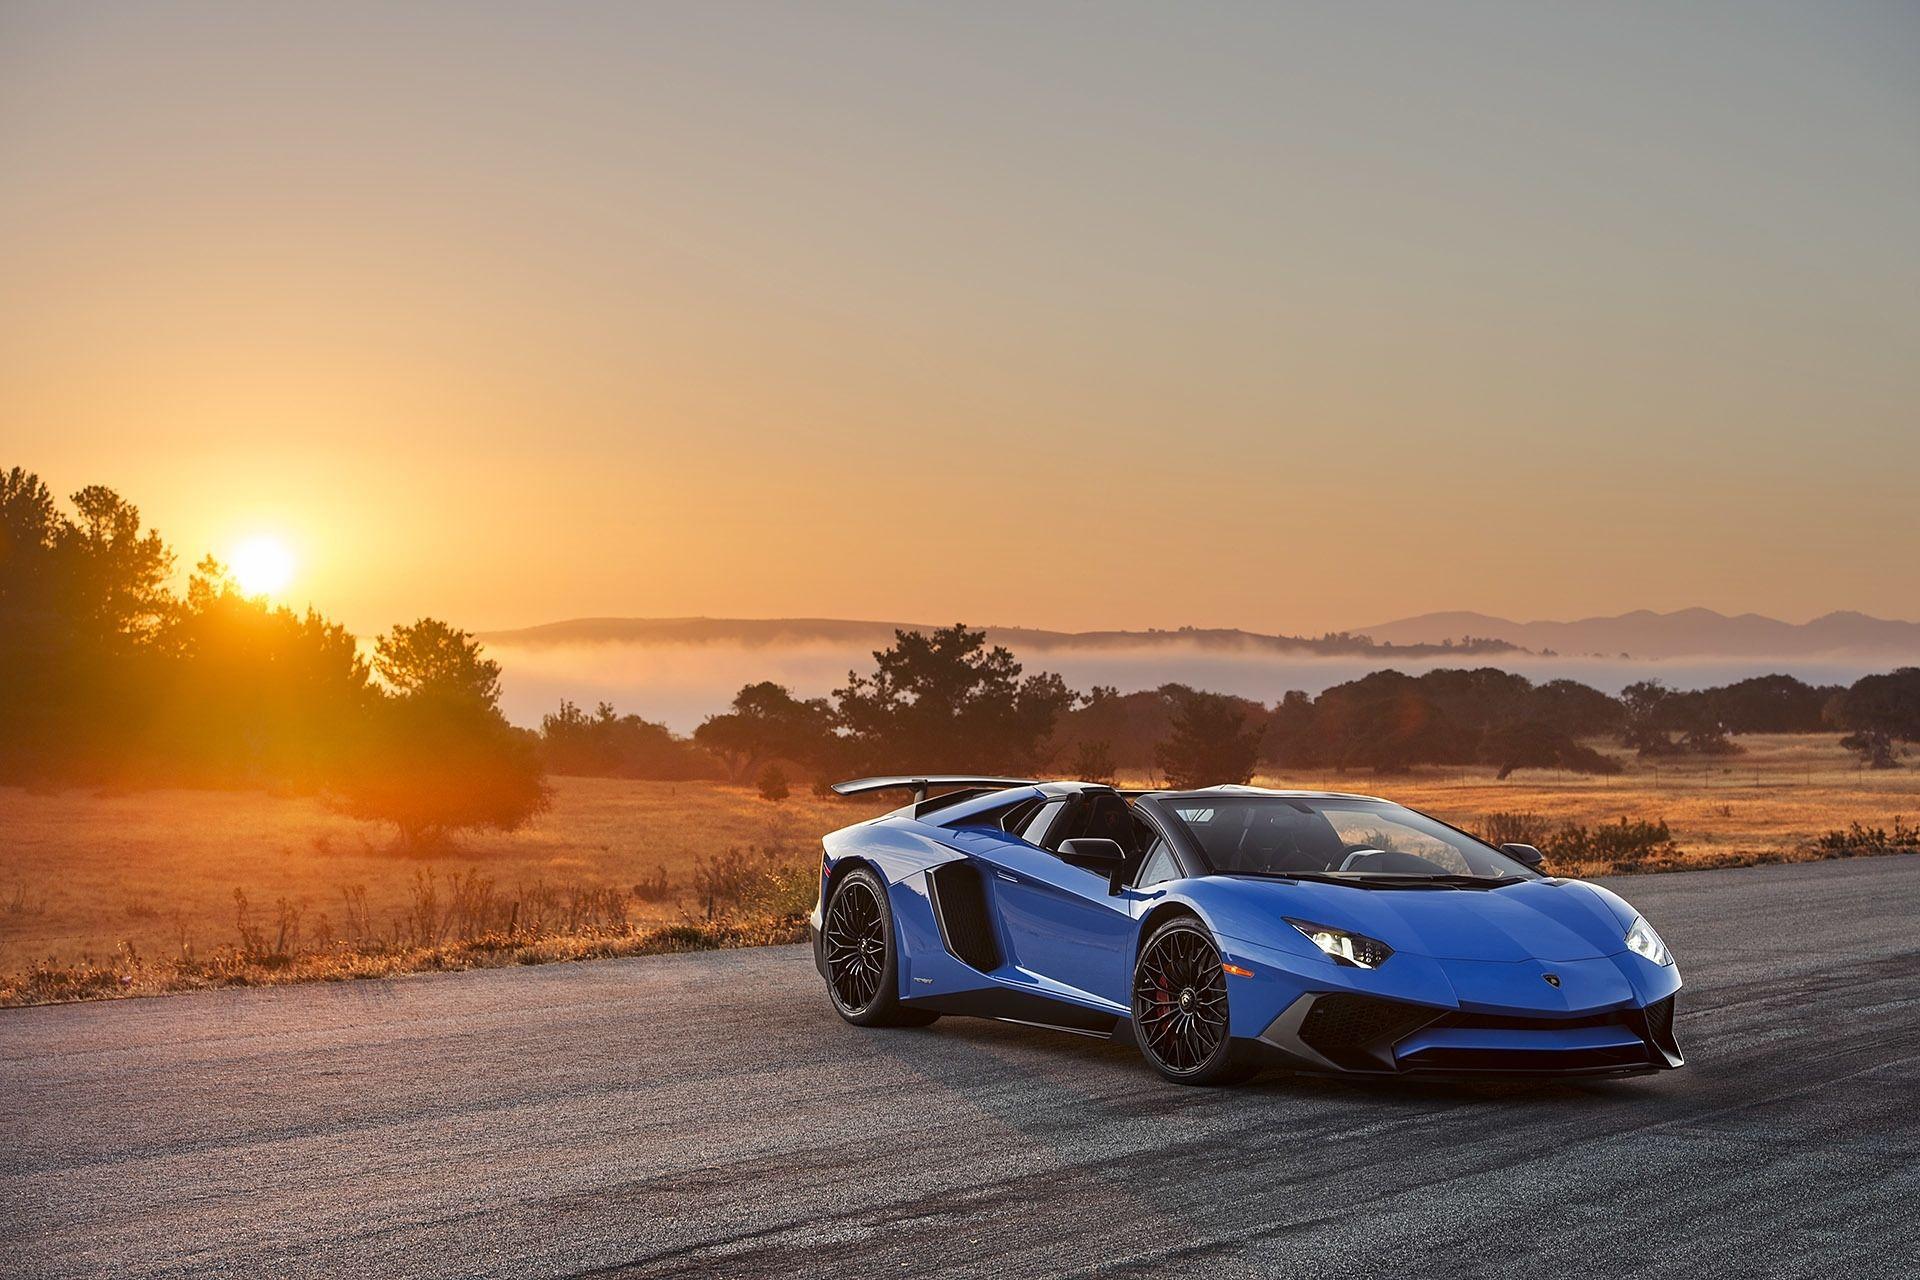 Blue Lamborghini Aventador Wallpapers với màu xanh độc đáo là một lựa chọn hoàn hảo cho những người yêu thích xe hơi và muốn tìm kiếm một kiểu wallpaper cực chất. Tận hưởng nó ngay bây giờ và cảm nhận độ thu hút và sự khác biệt.